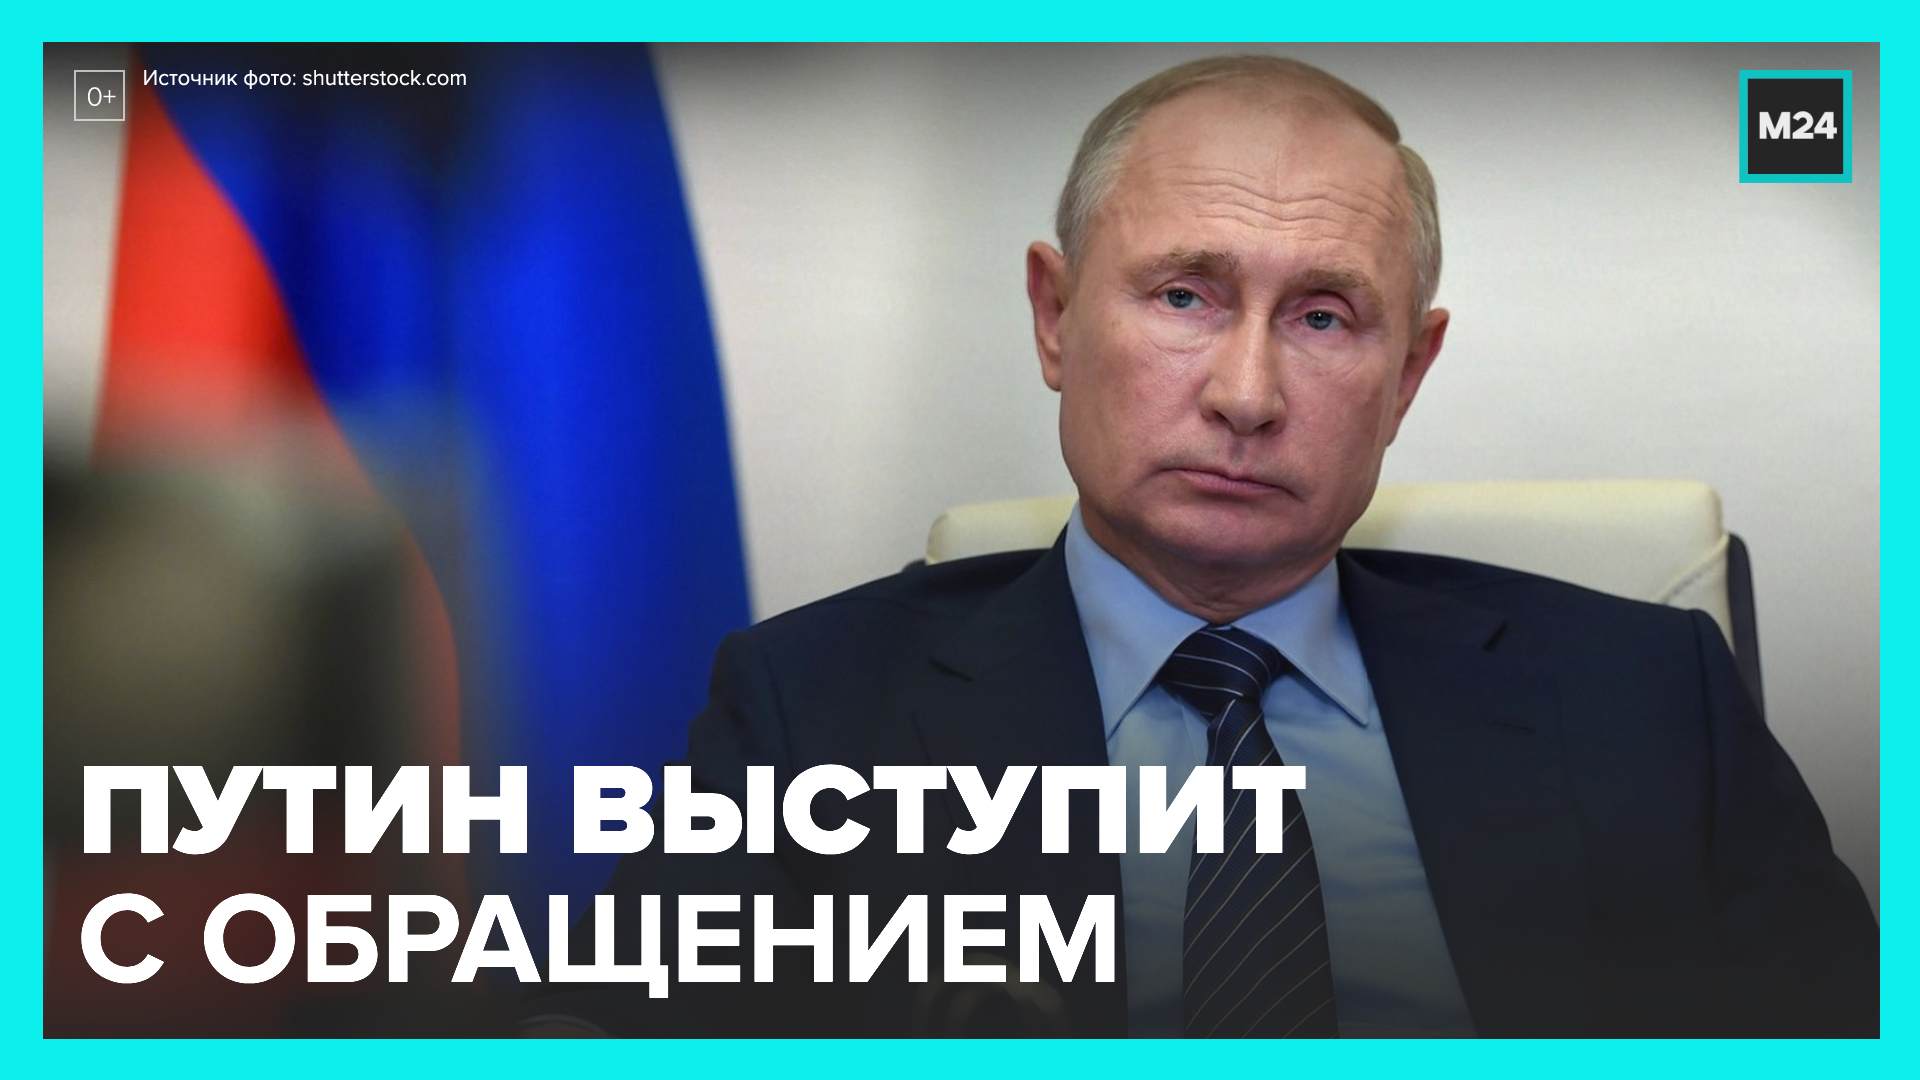 Россия 24 обращение. Сегодняшнее обращение Путина.